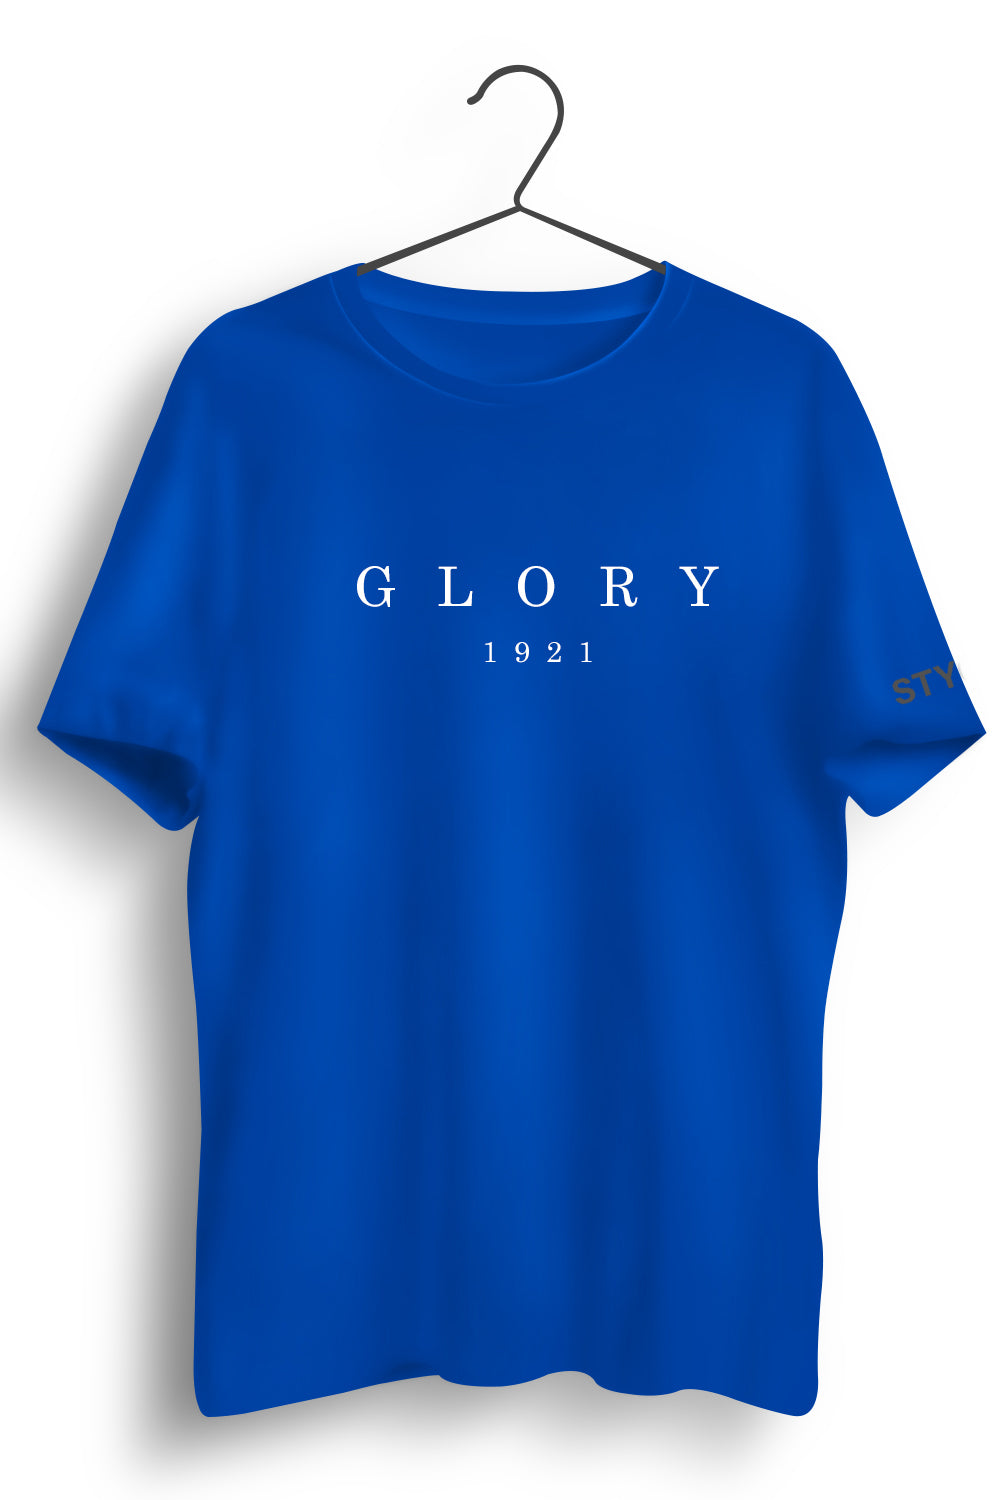 Glory Graphic Printed Blue Tshirt